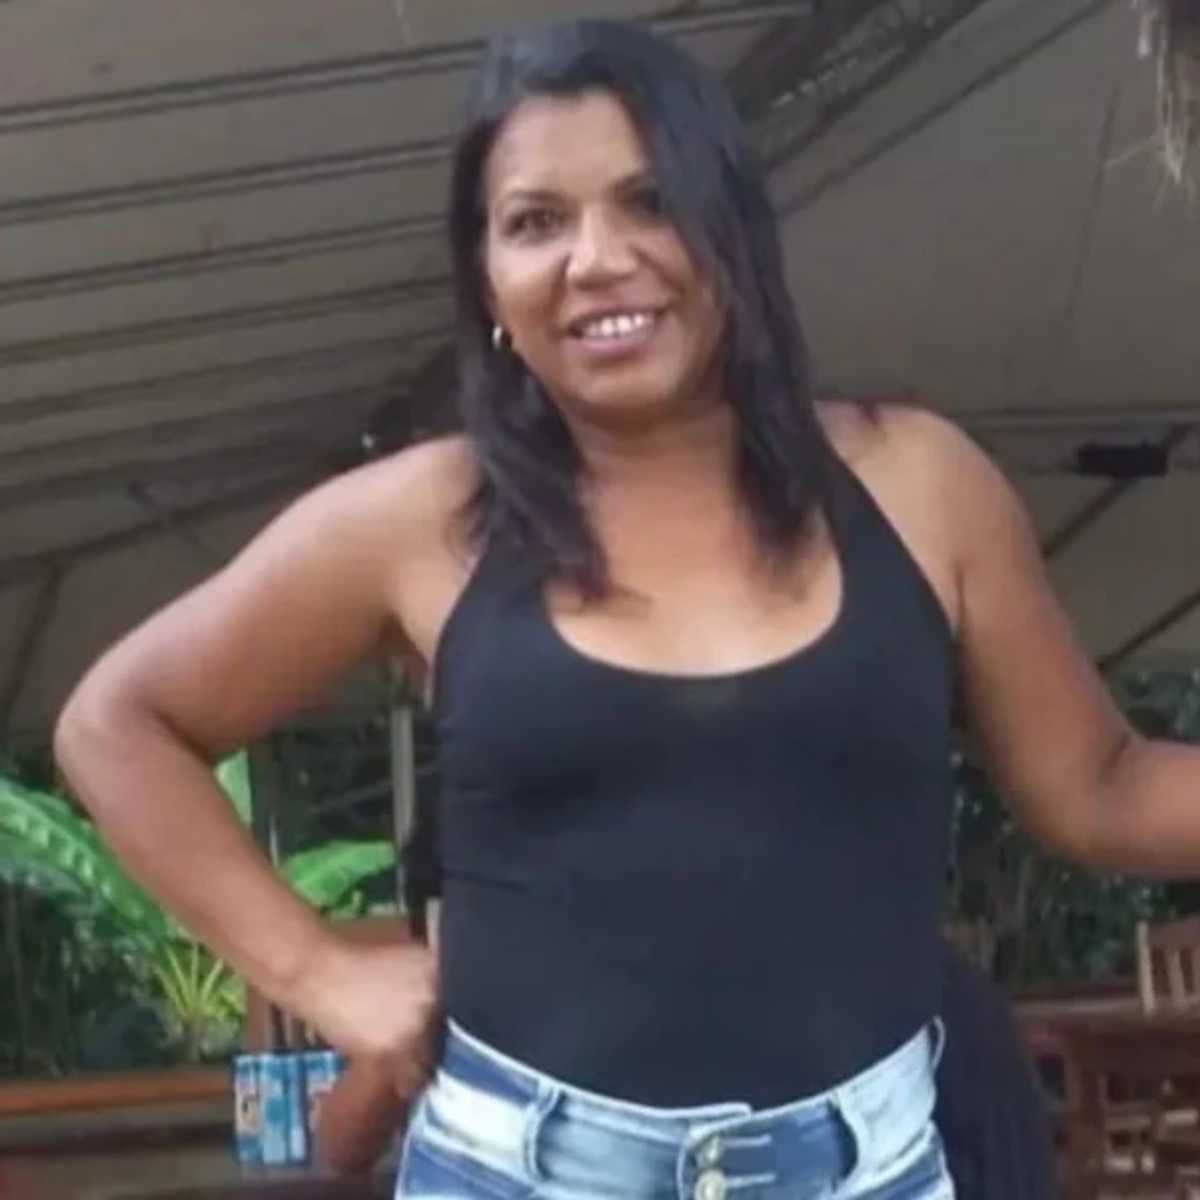  A vítima foi identificada como Ozeni Alves Teixeira, de 49 anos. Ela aguardava sua vez para realizar a prova prática junto a outros candidatos, quando foi atingida por um veículo. Duas outras pessoas também ficaram feridas. 